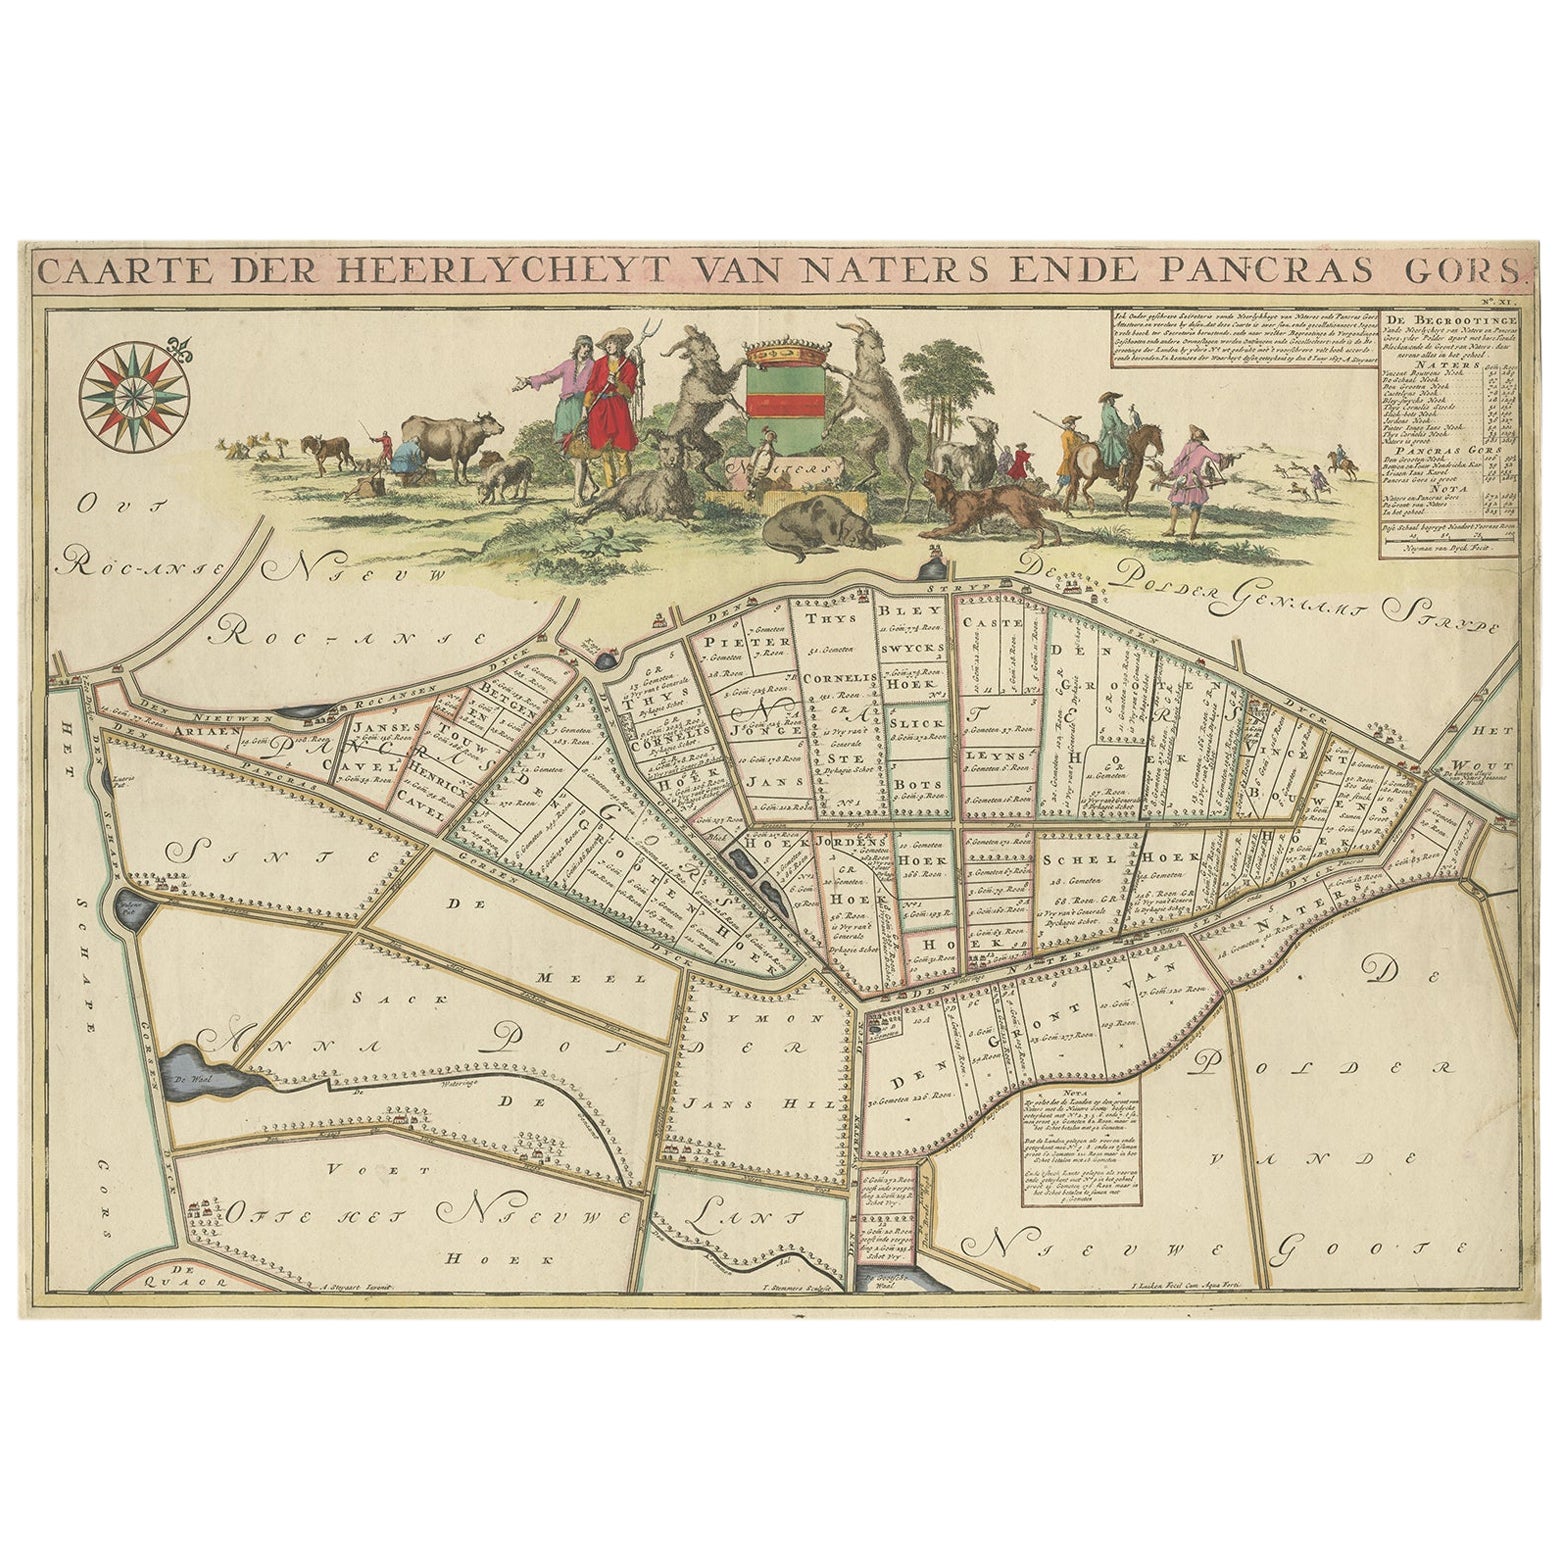 Magnifique carte de la région Naters and Pancrasgors, Pays-Bas, vers 1697